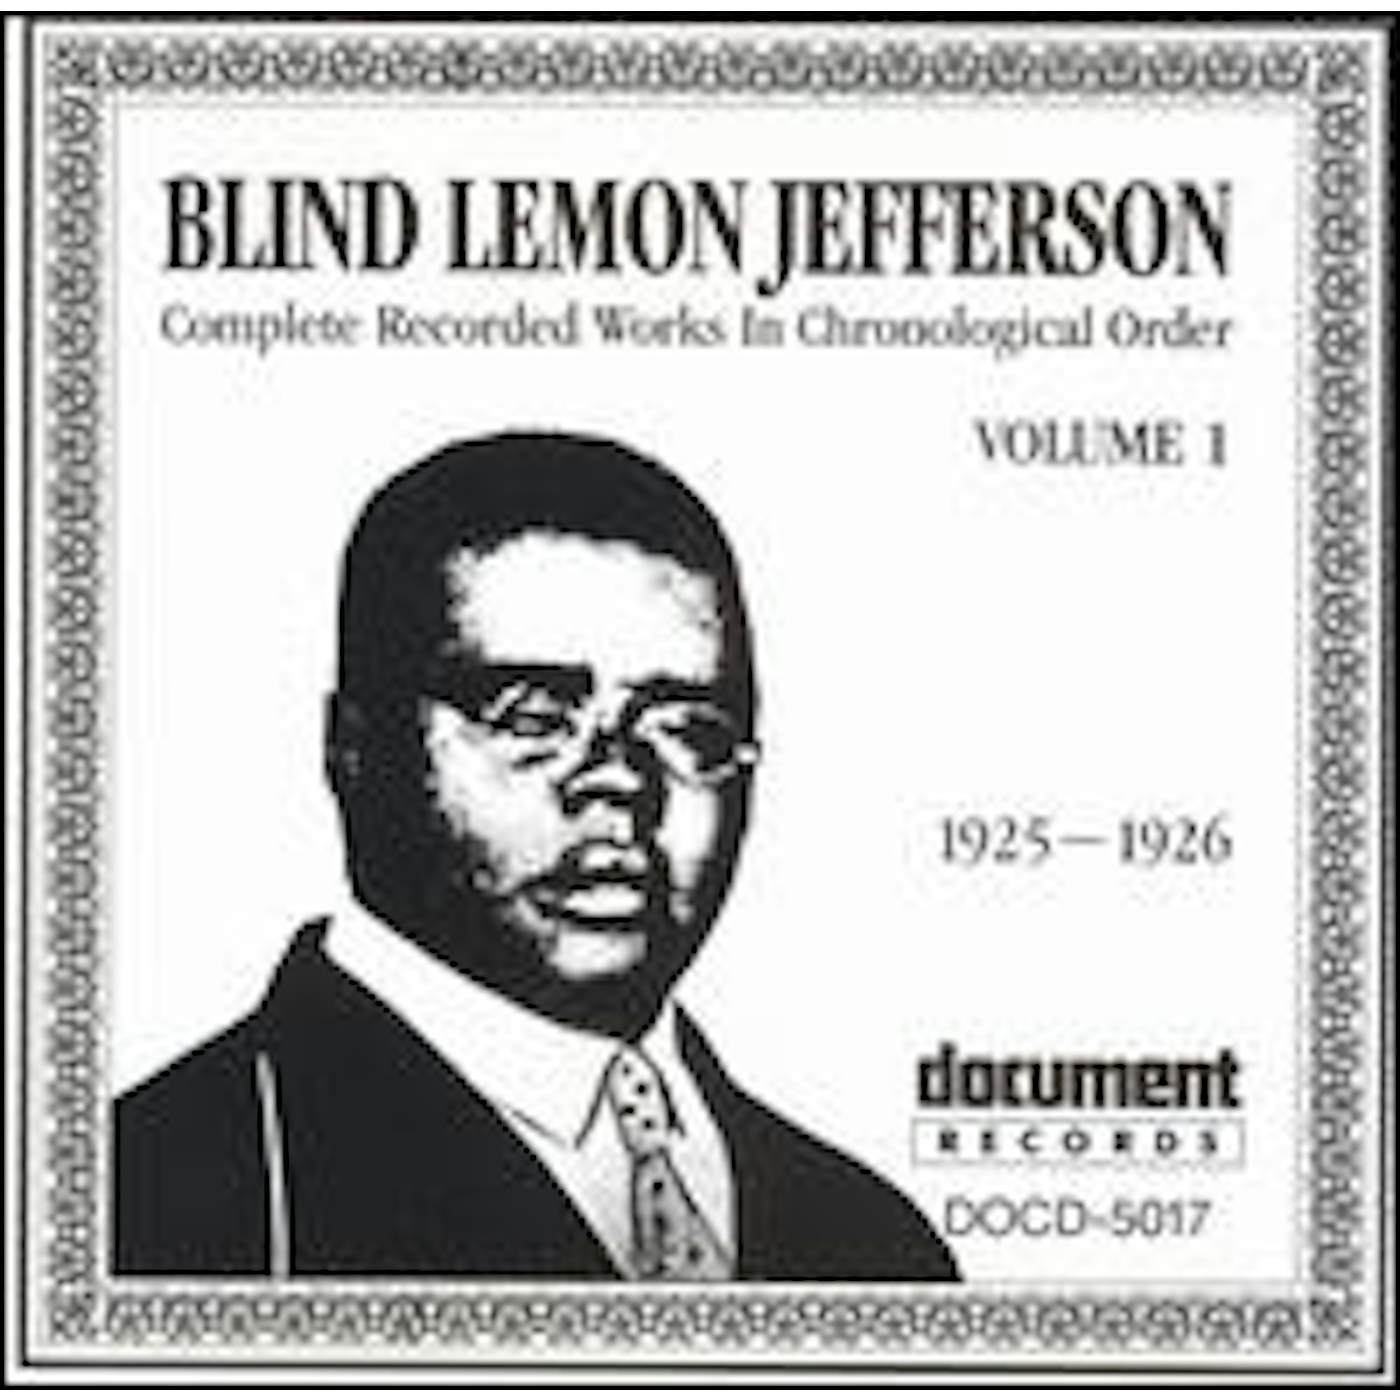 Blind Lemon Jefferson COMPLETE RECORDED 1 CD